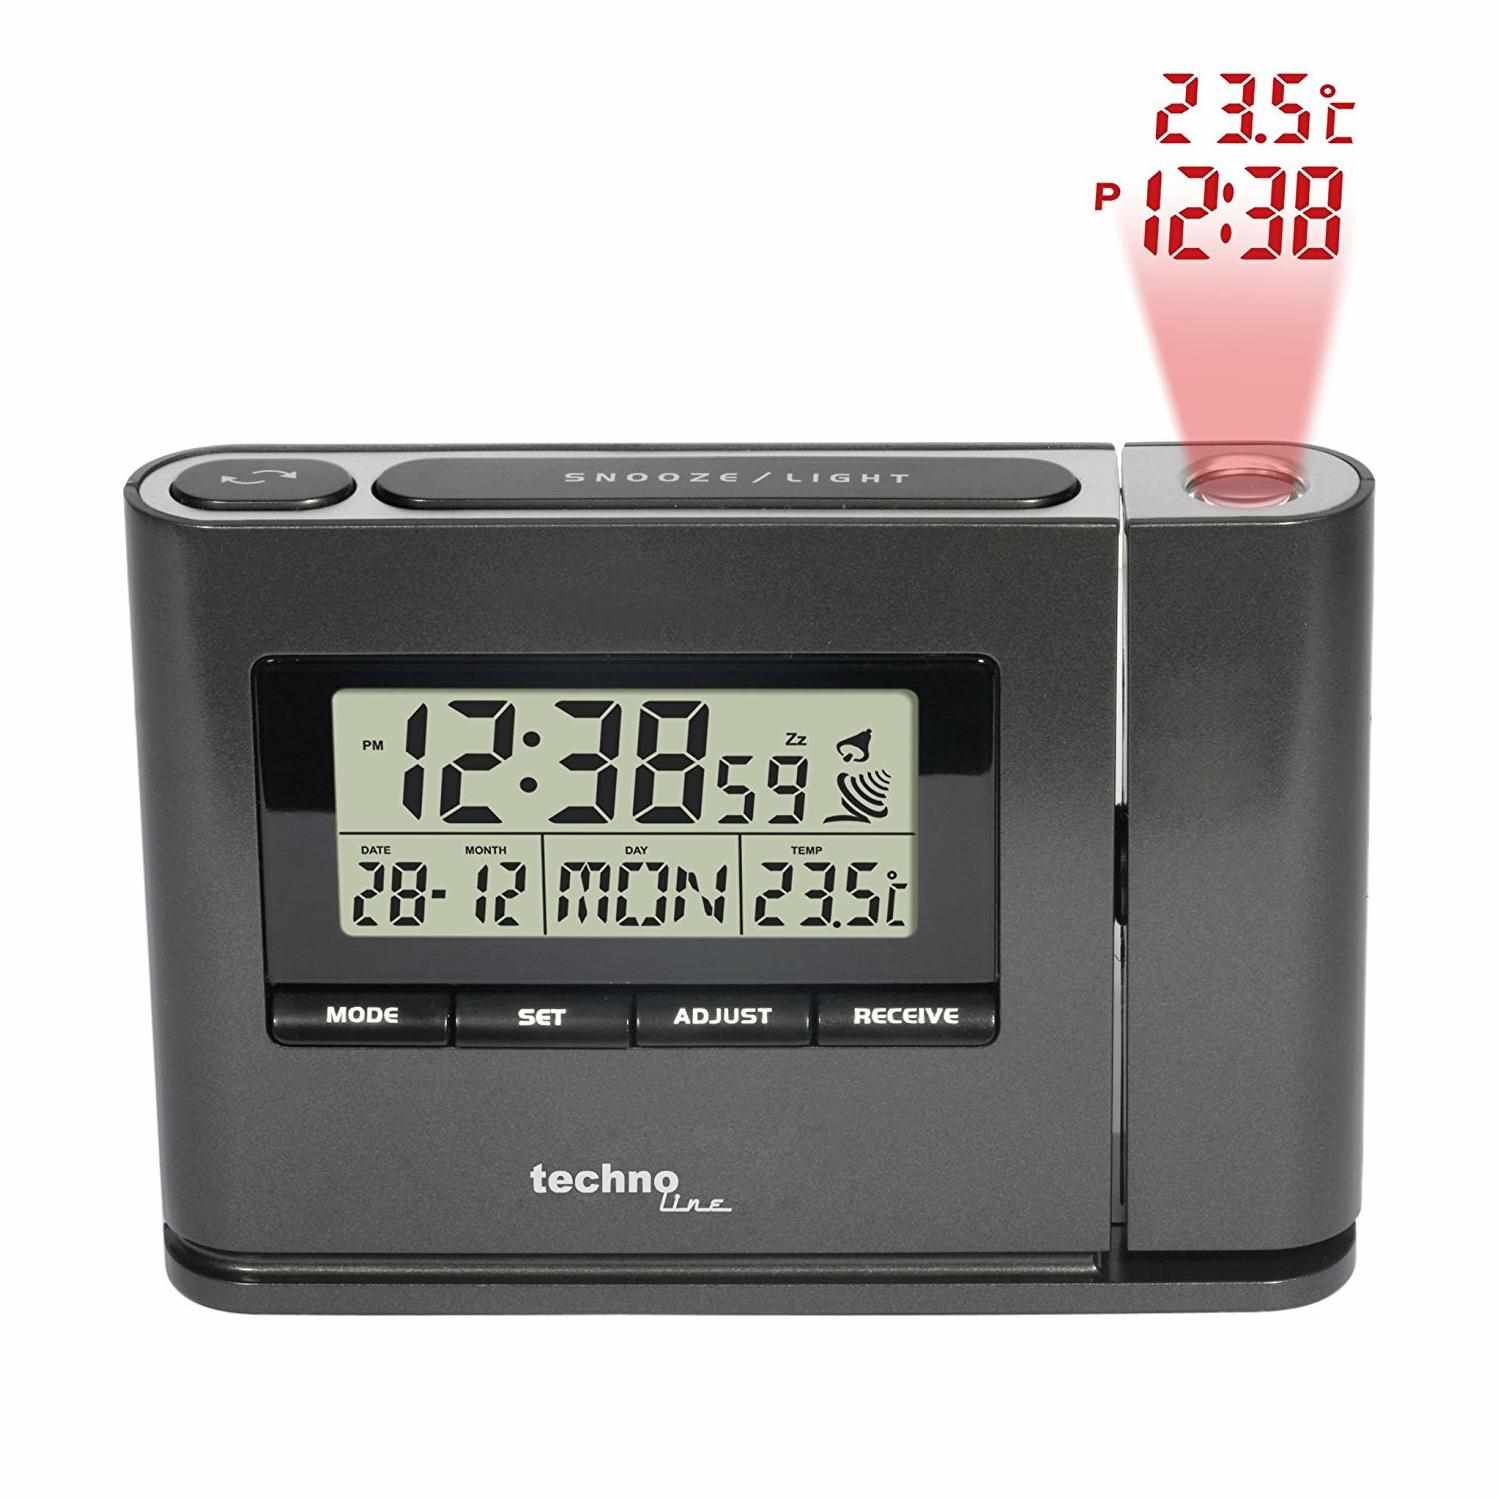 TechnoLine WT 519 - digitální budík s projekcí času a vnitřní teploty2 